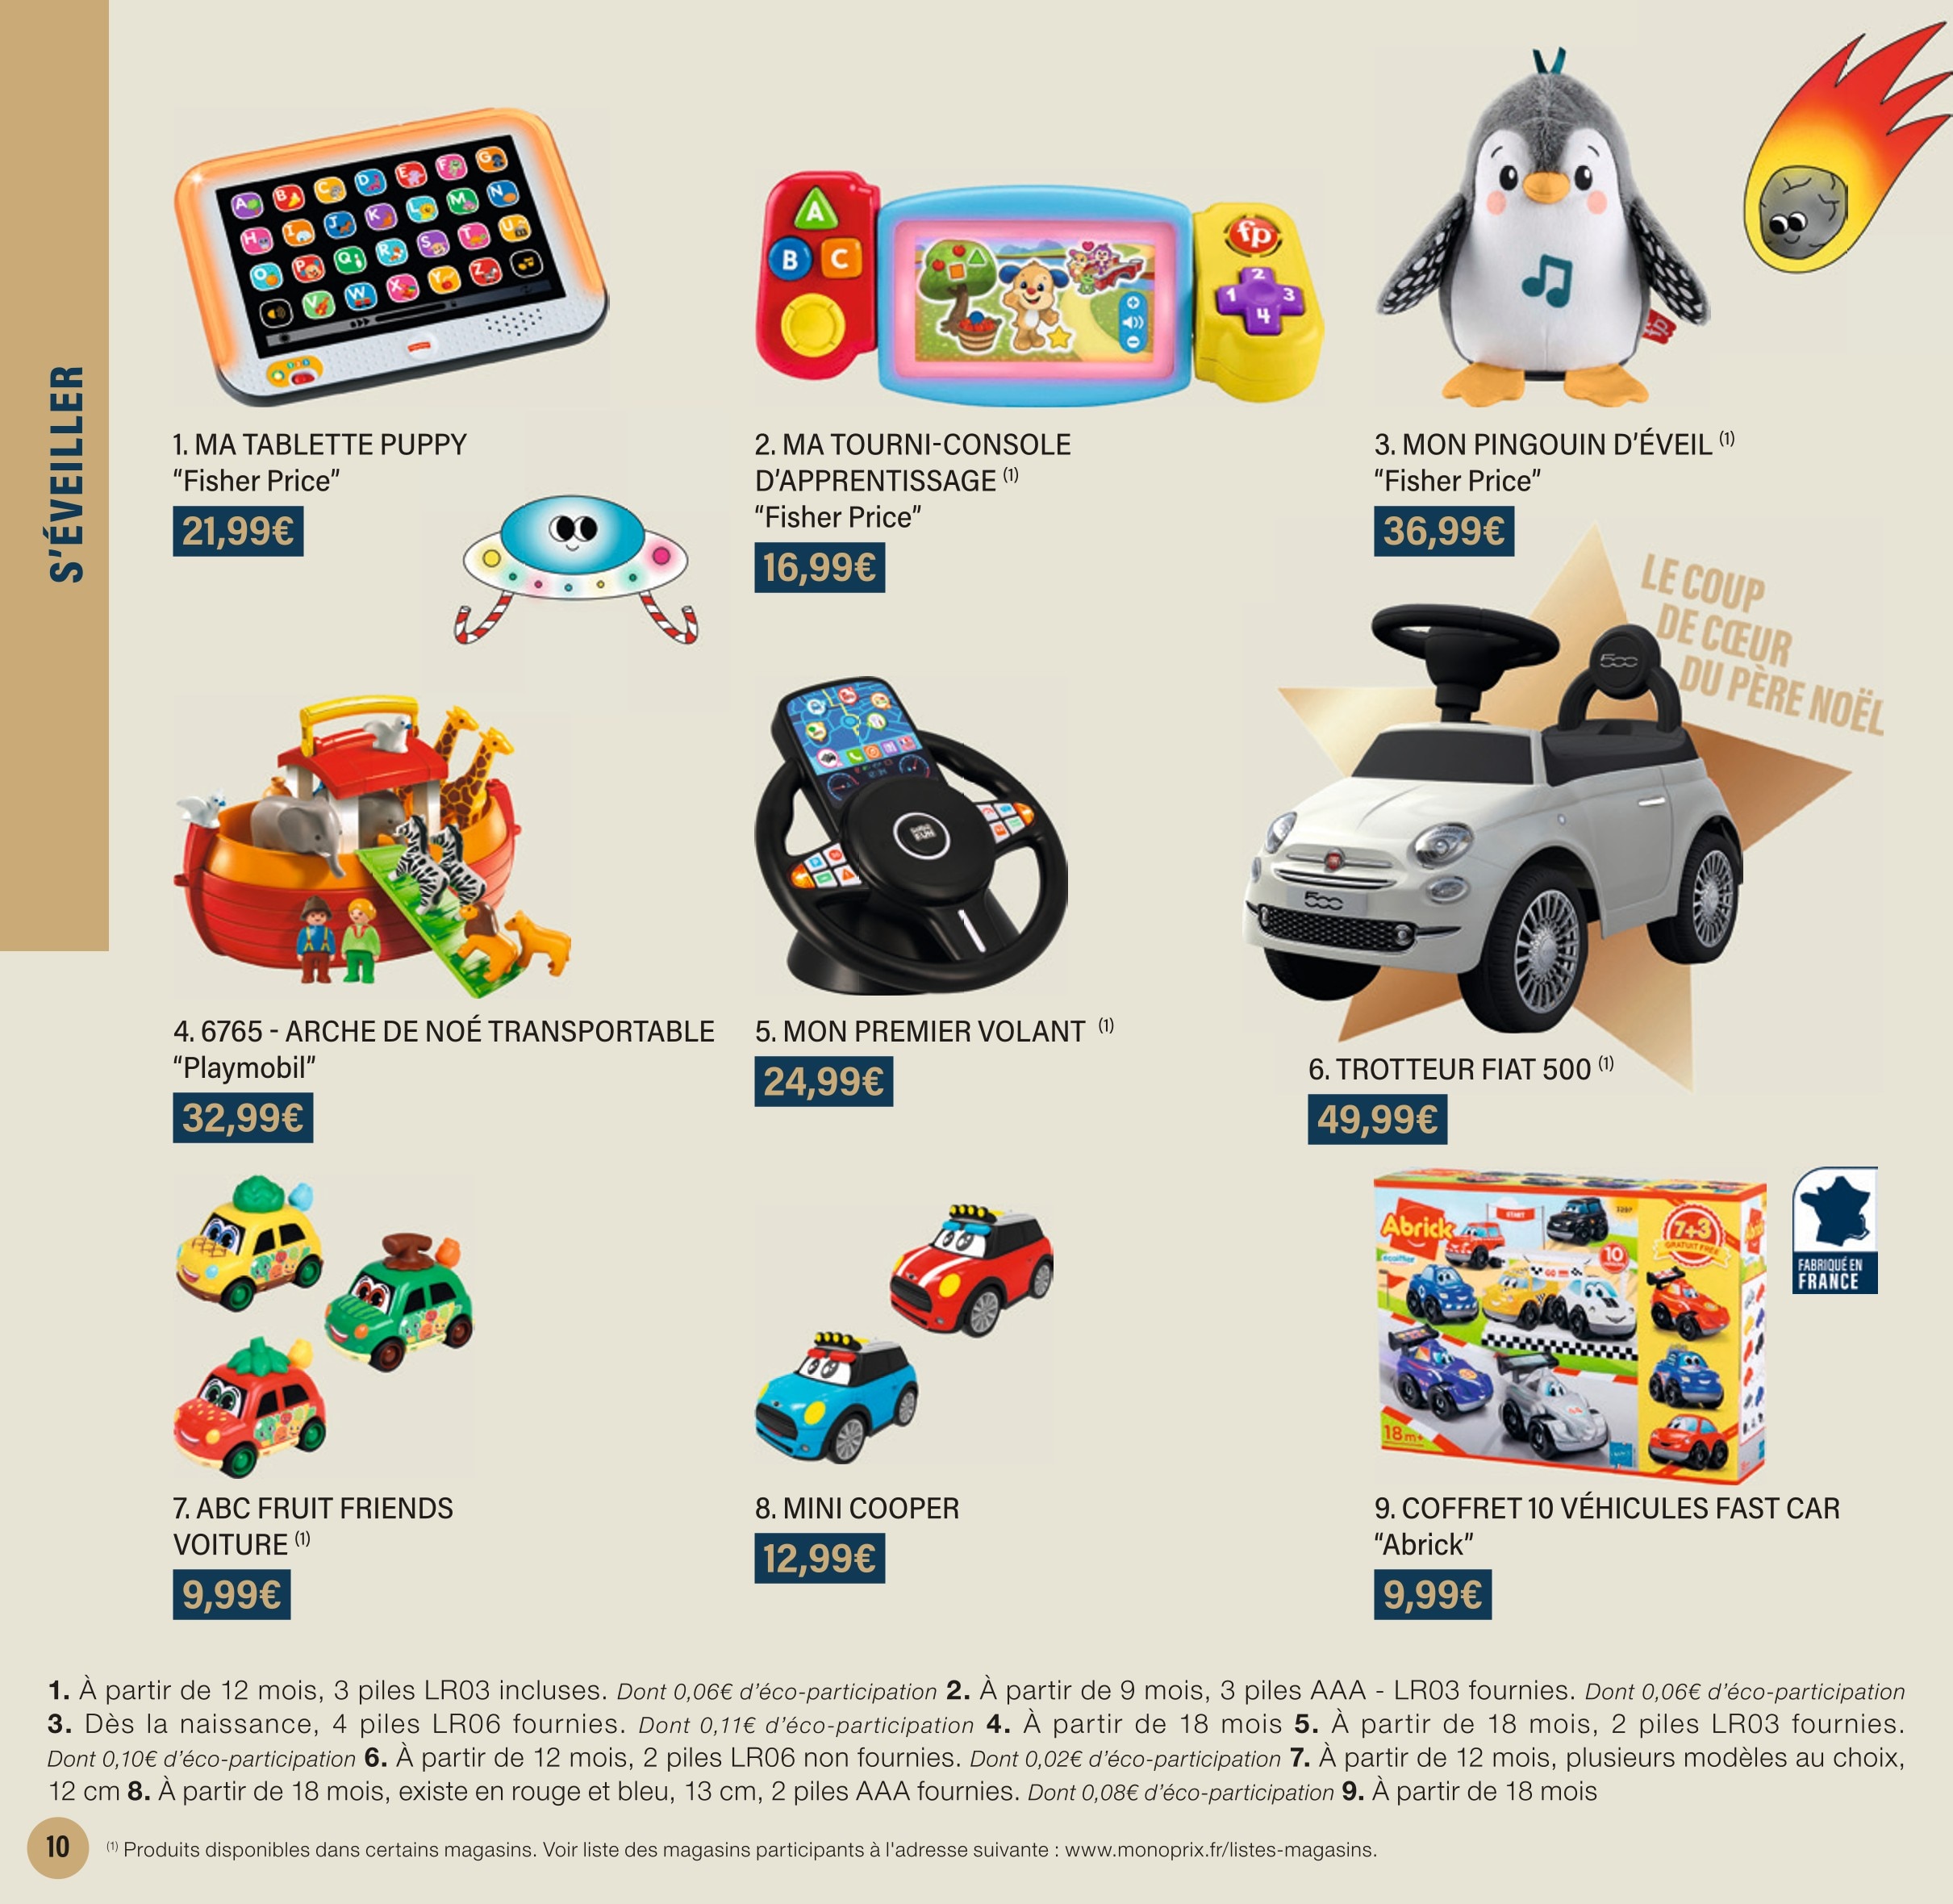 Achat Camping Car Playmobil pas cher ᐅ Promo et meilleur prix